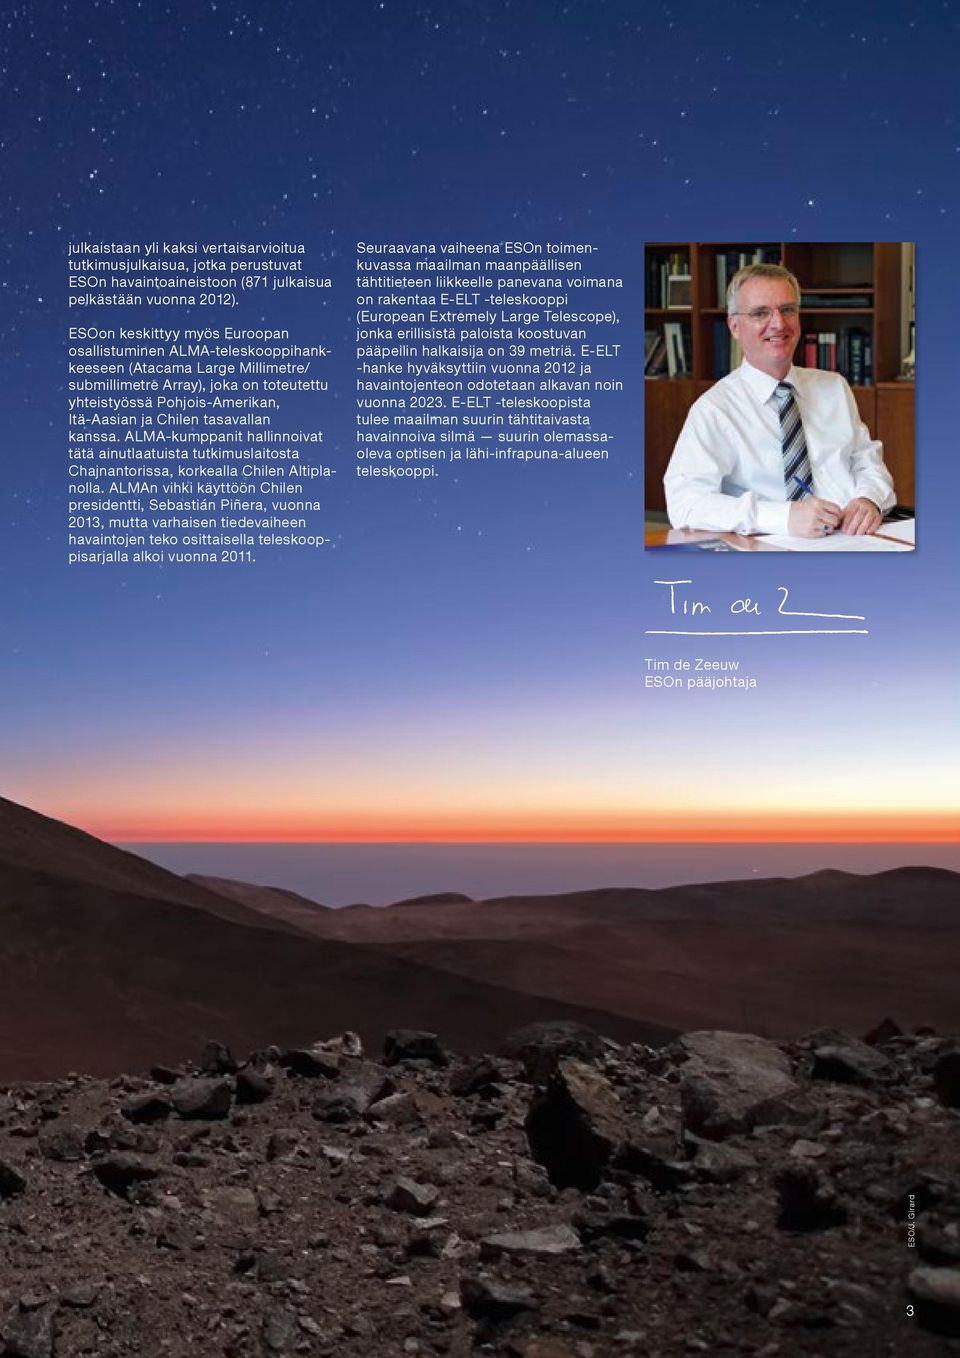 tasavallan kanssa. ALMA-kumppanit hallinnoivat tätä ainutlaatuista tutkimuslaitosta Chajnantorissa, korkealla Chilen Altiplanolla.